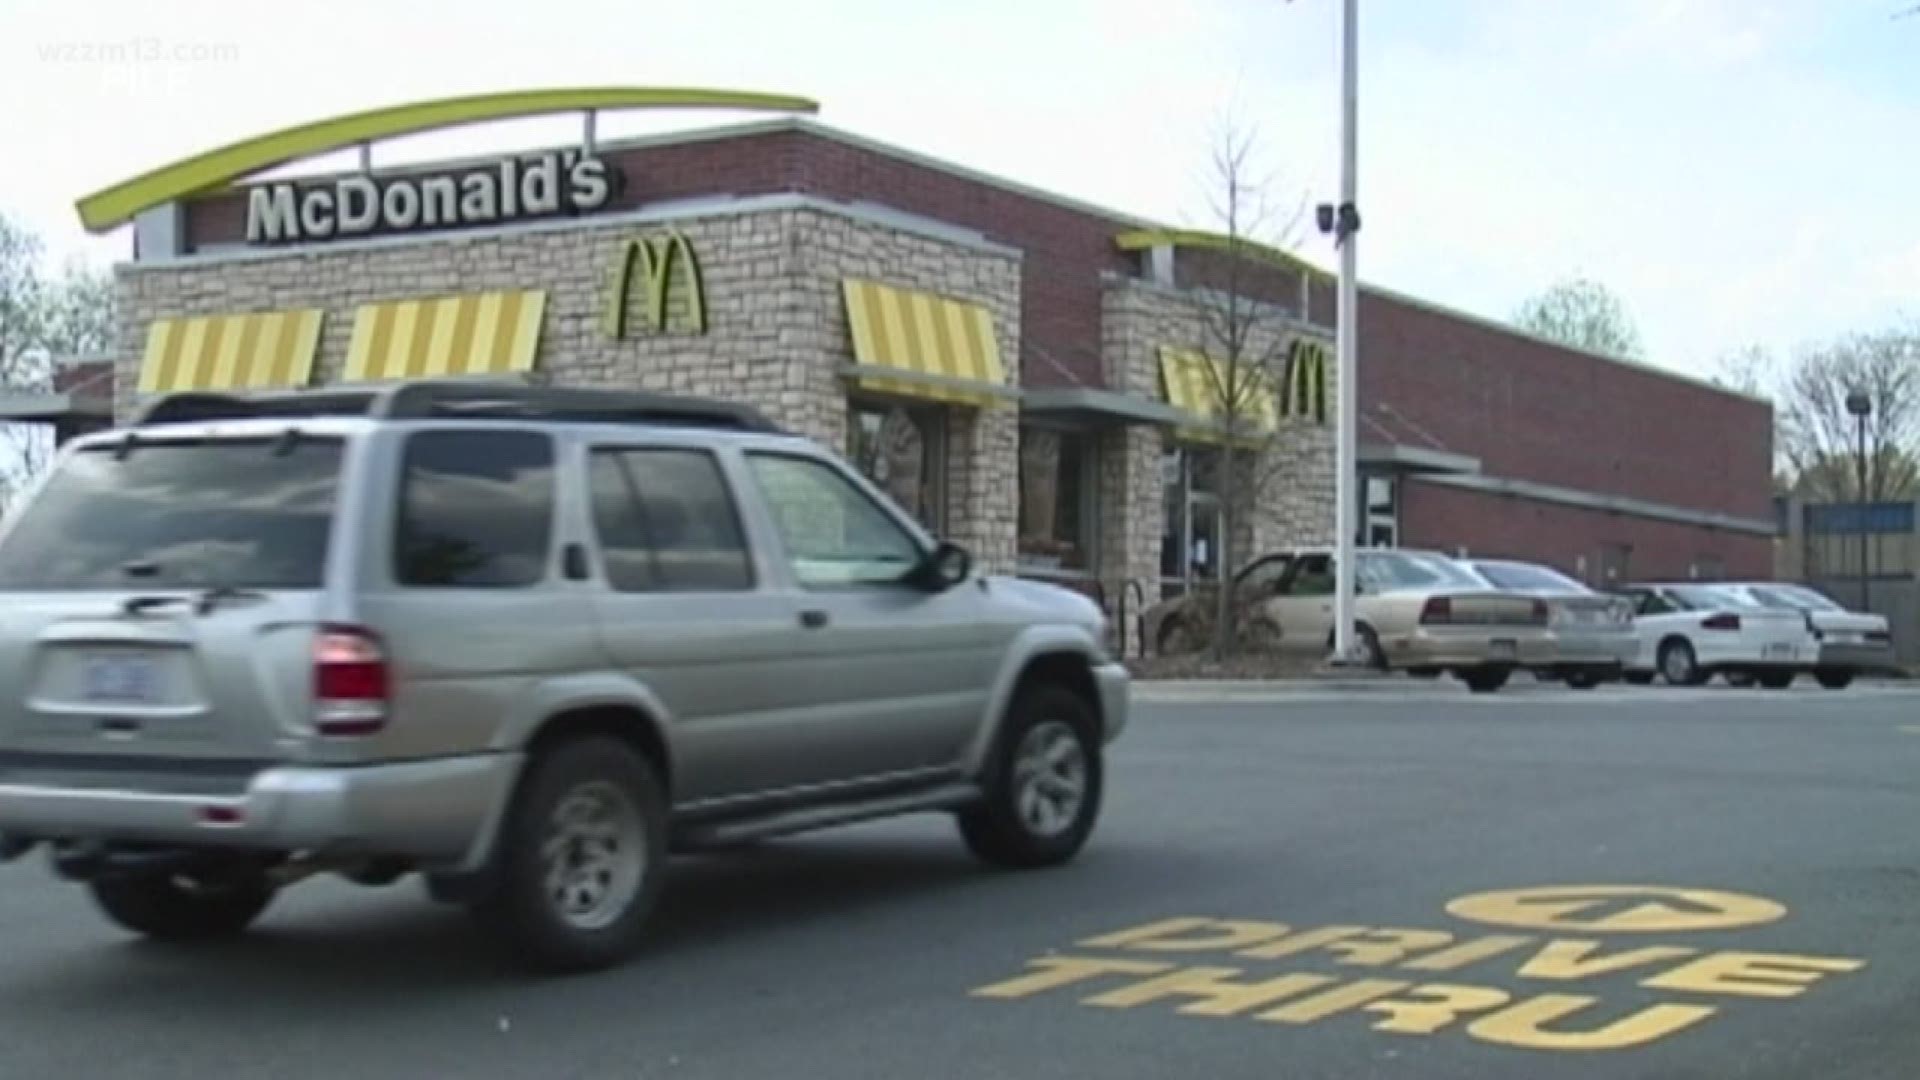 FBHW: Scheme to defraud McDonald's gets movie